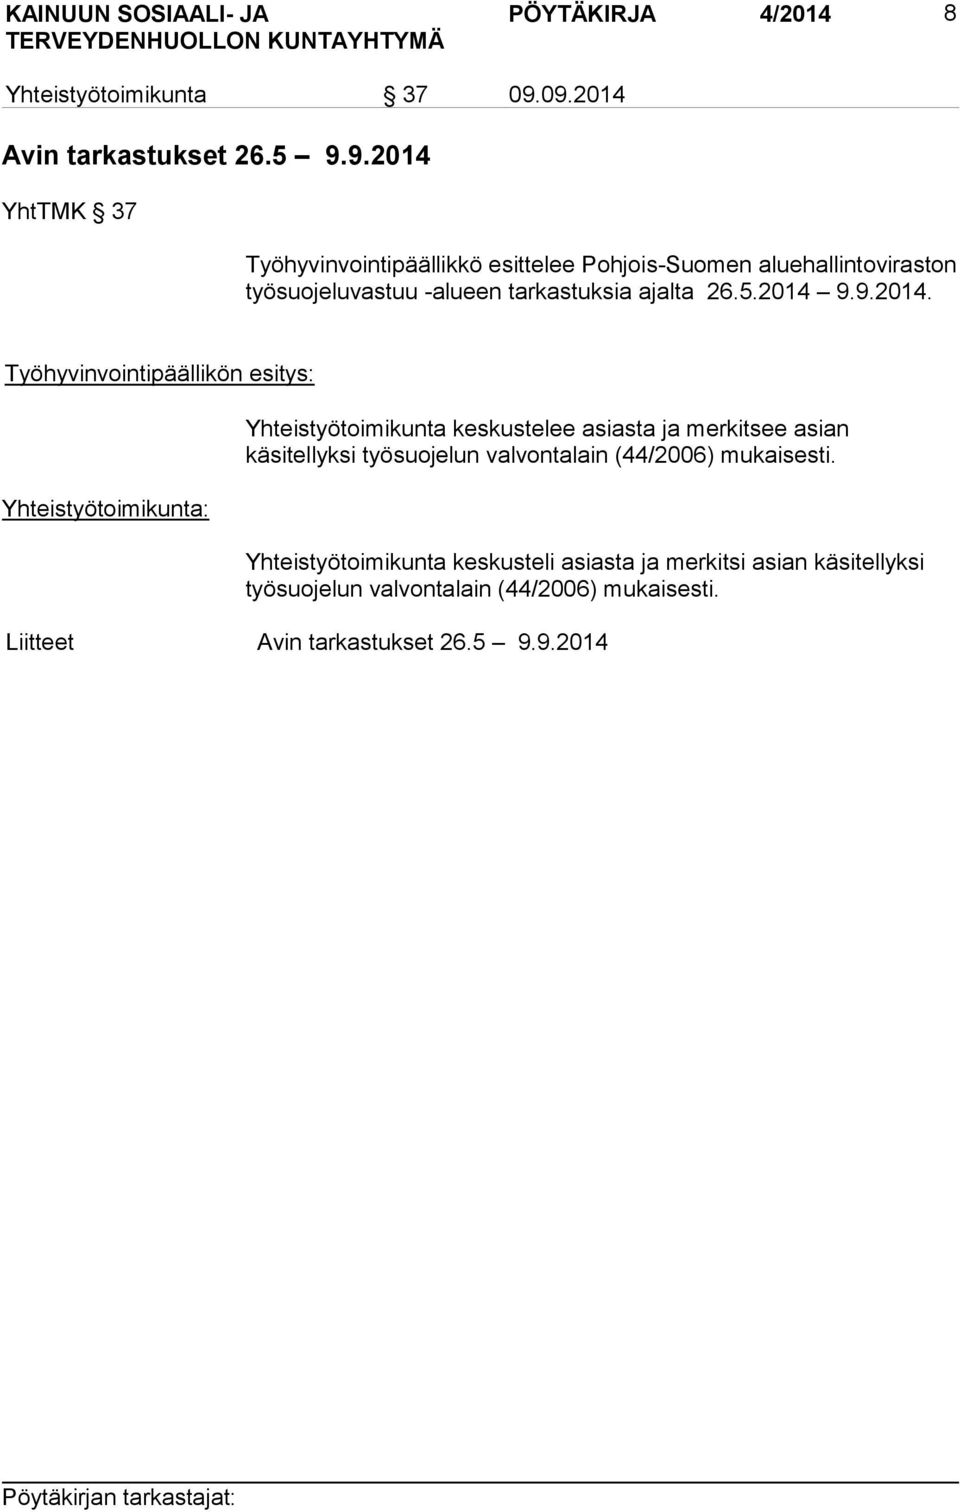 työsuojeluvastuu -alueen tarkastuksia ajalta 26.5.2014 